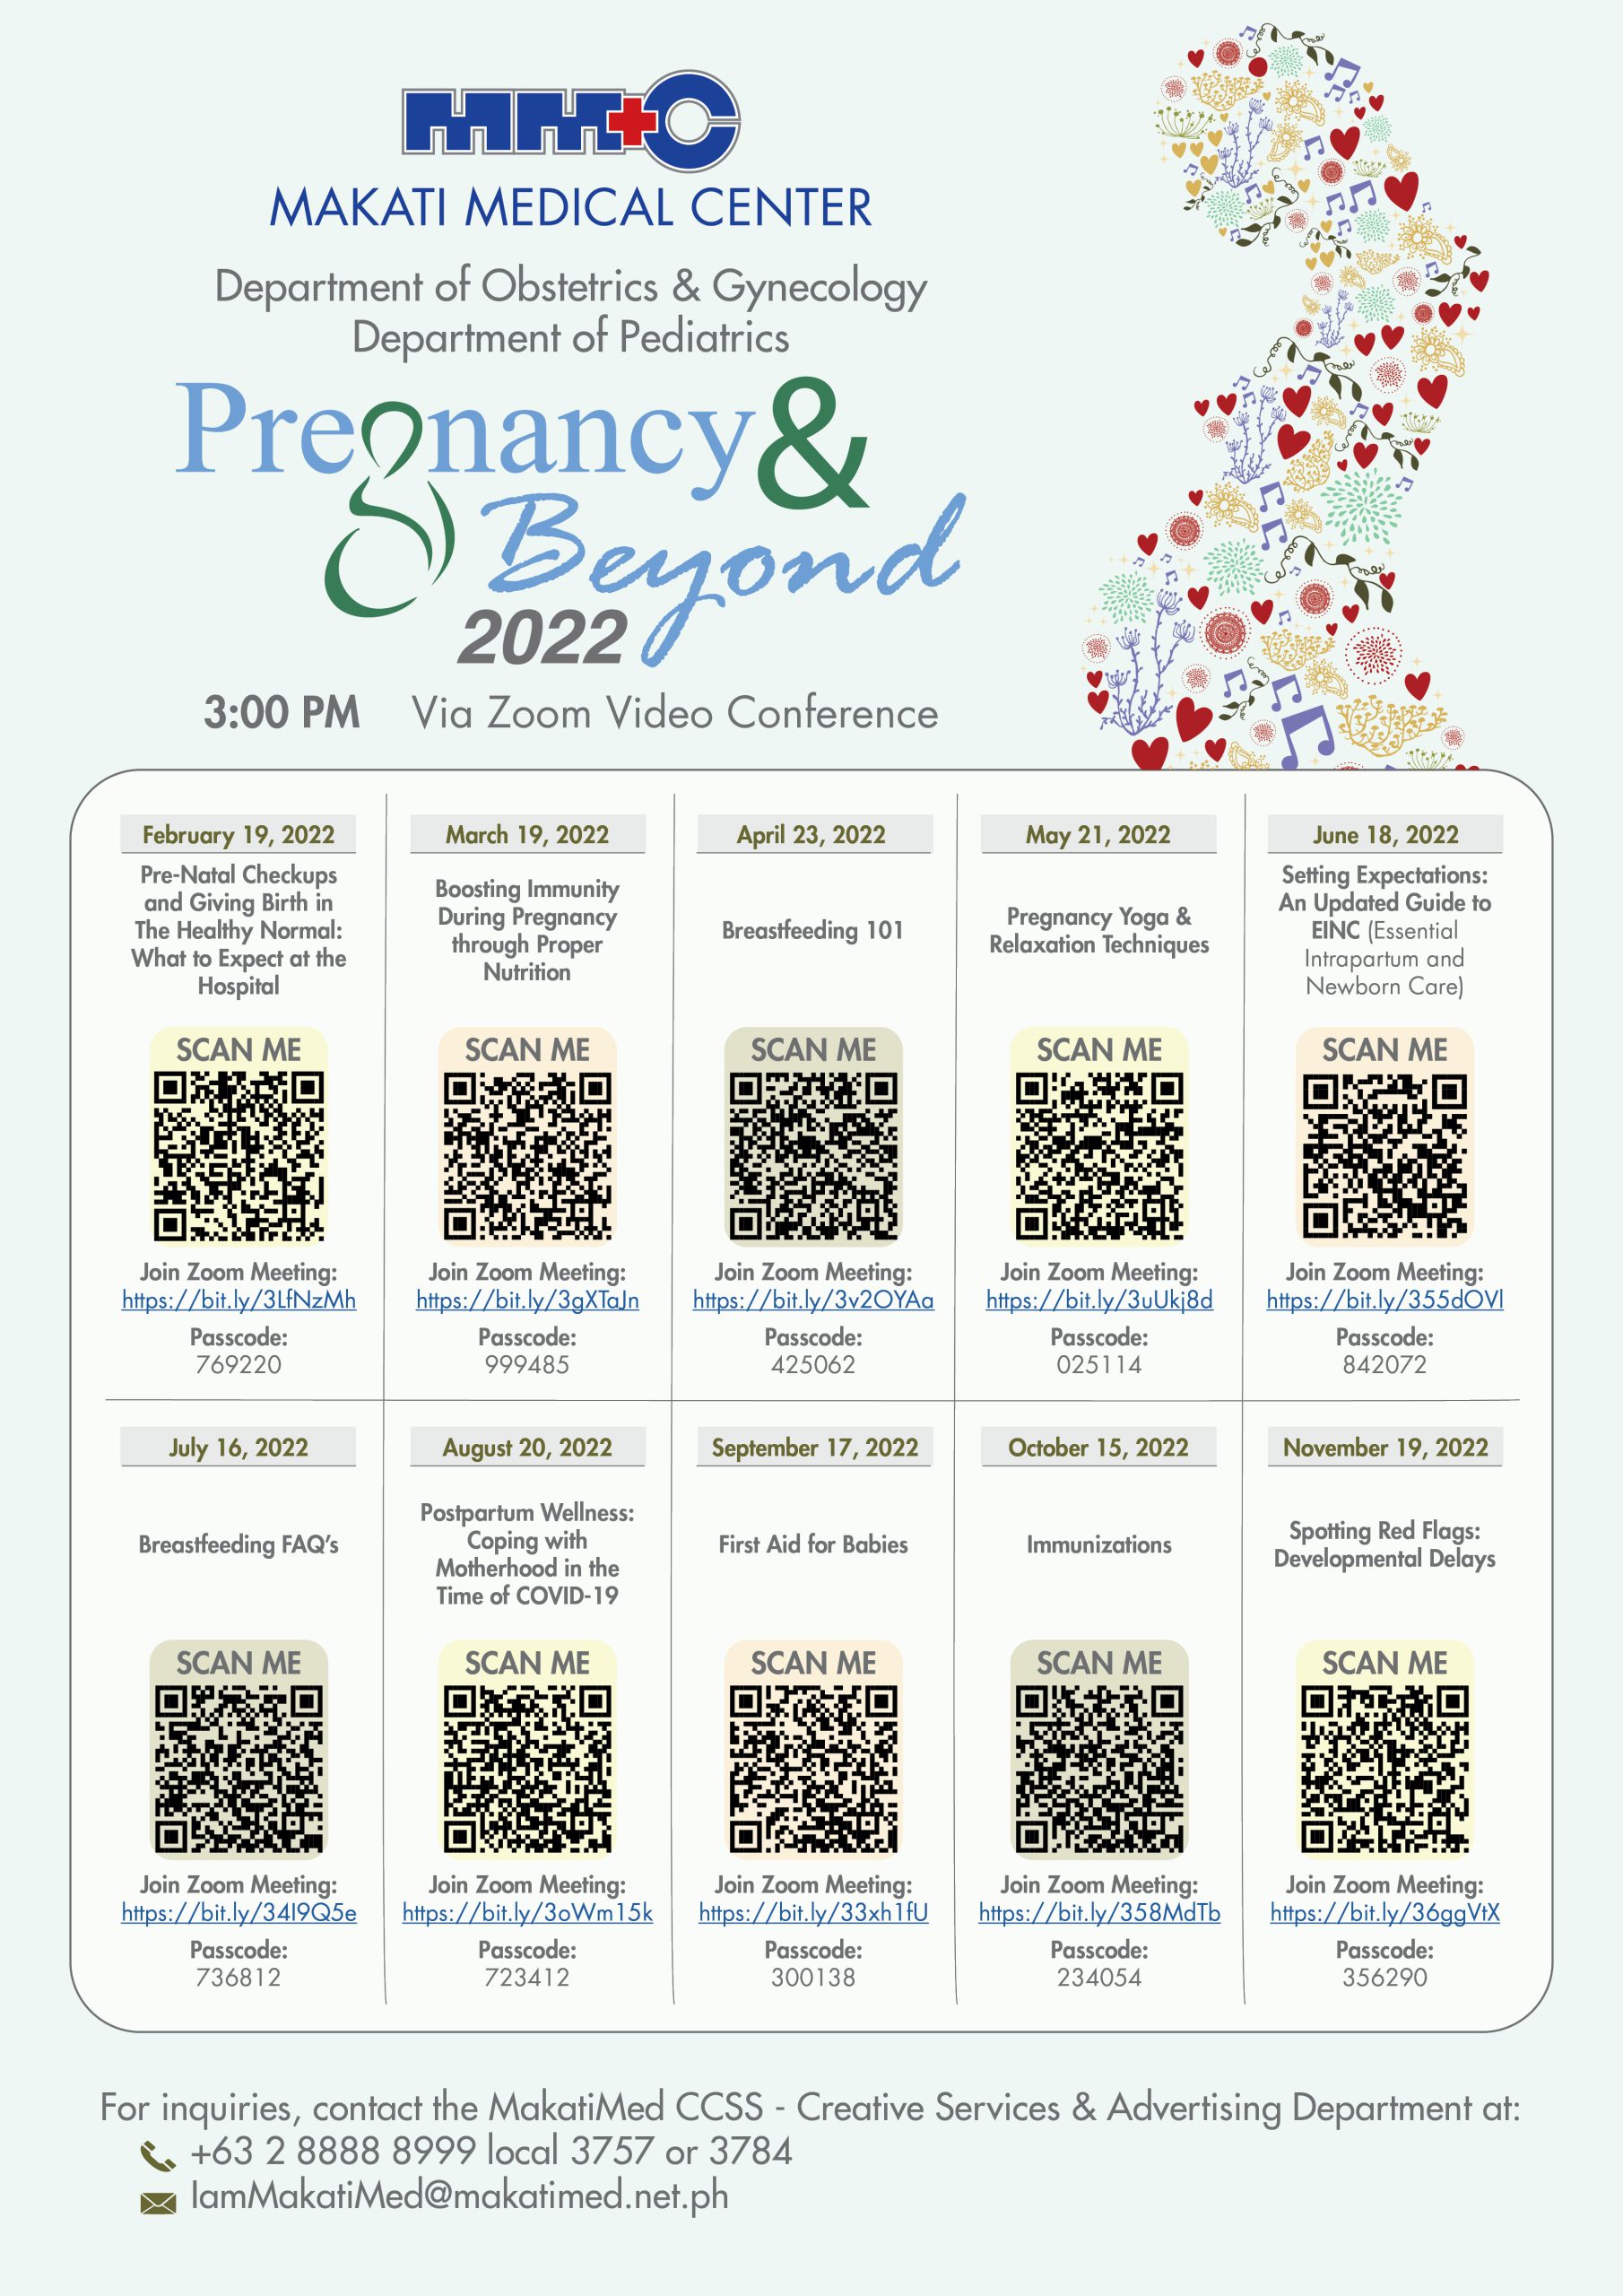 Pregnancy & Beyond 2022